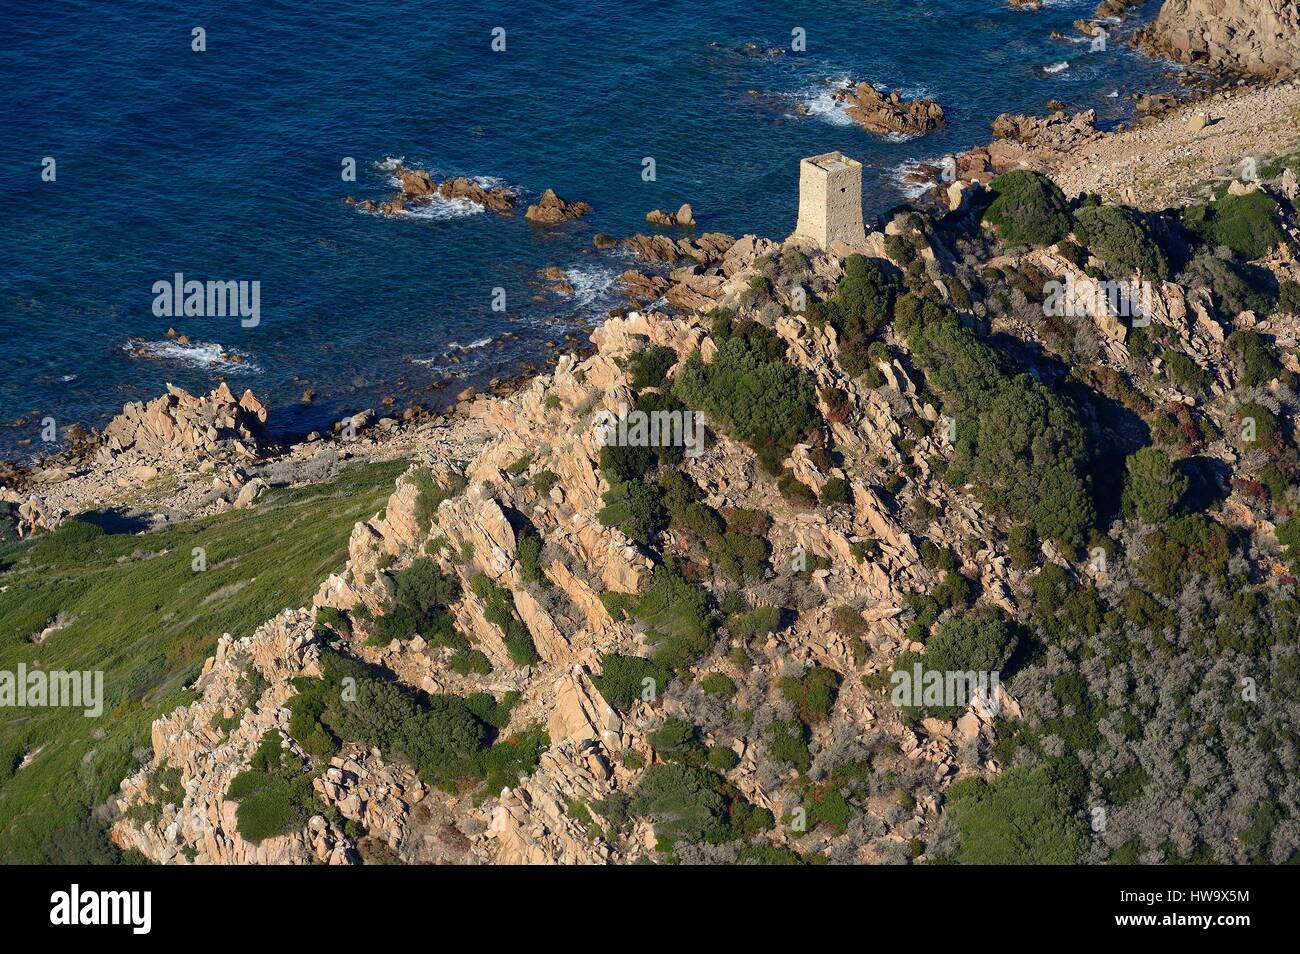 France, Corse du Sud, Golfe d'Ajaccio, Parata point, îles Sanguinaires, Mezzu mare island Castelluccio tower (vue aérienne) Banque D'Images